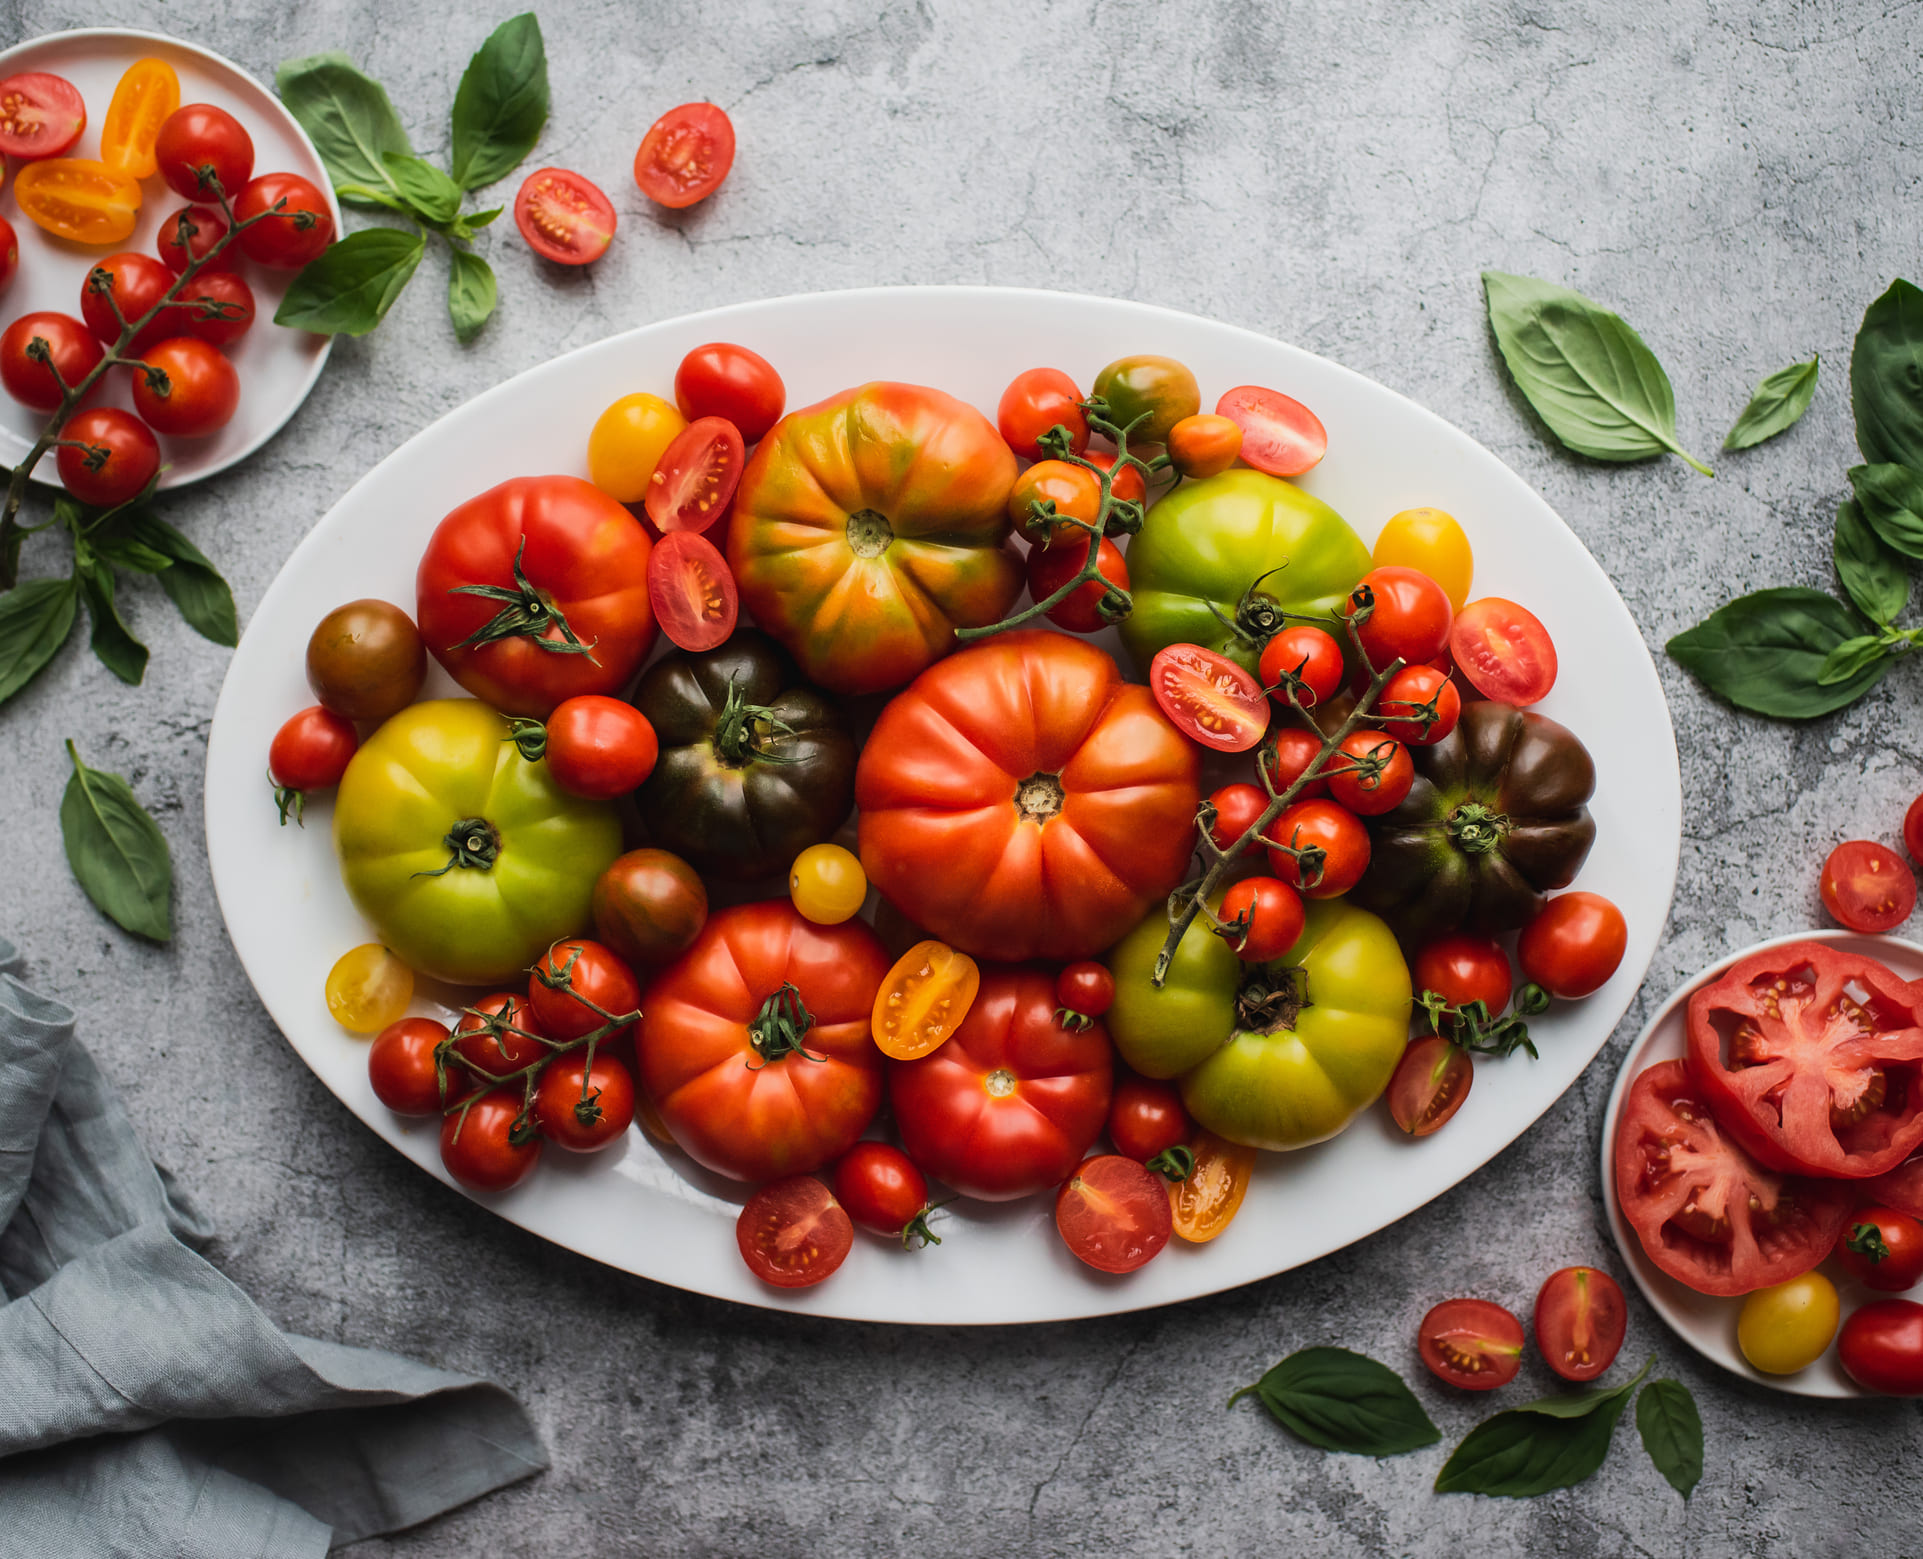 Diferentes tipos de tomate servidos en una plato.